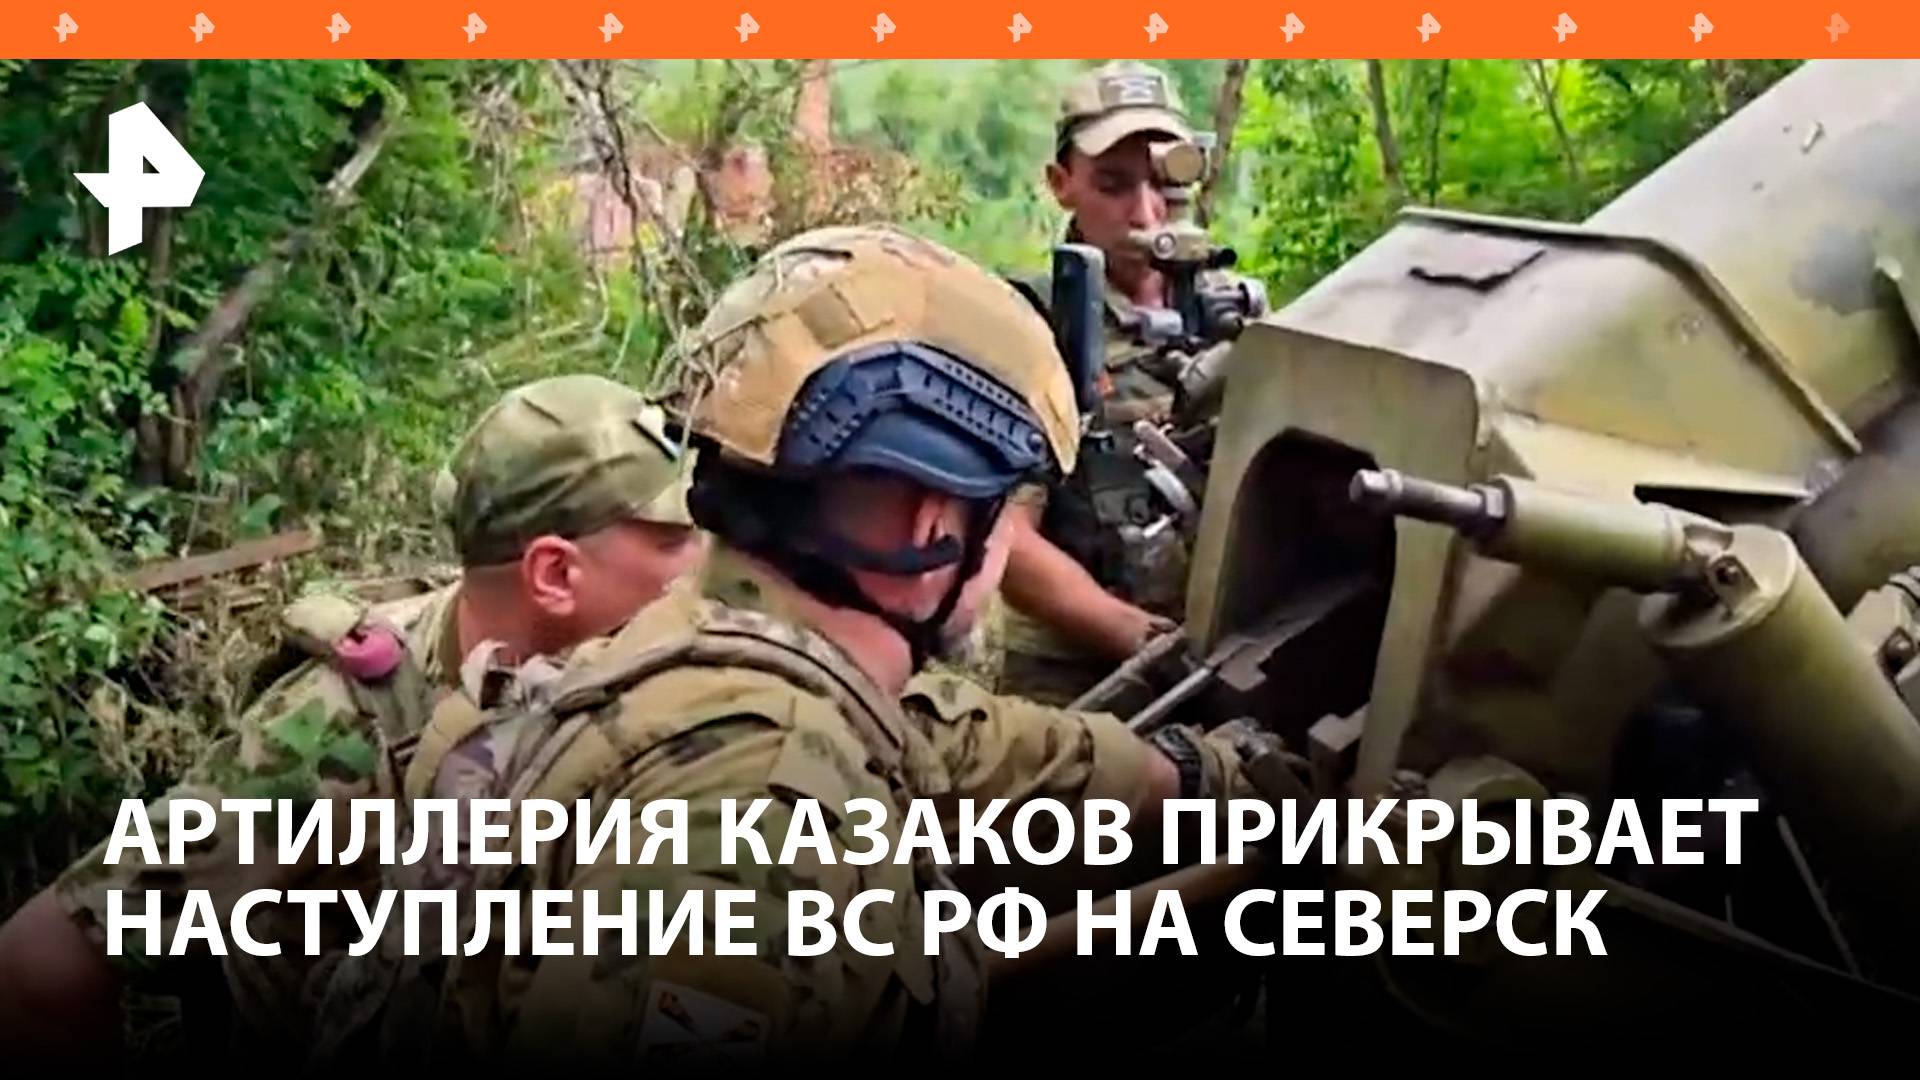 Артиллерия казаков прикрывает наступление ВС РФ на Северск / РЕН Новости